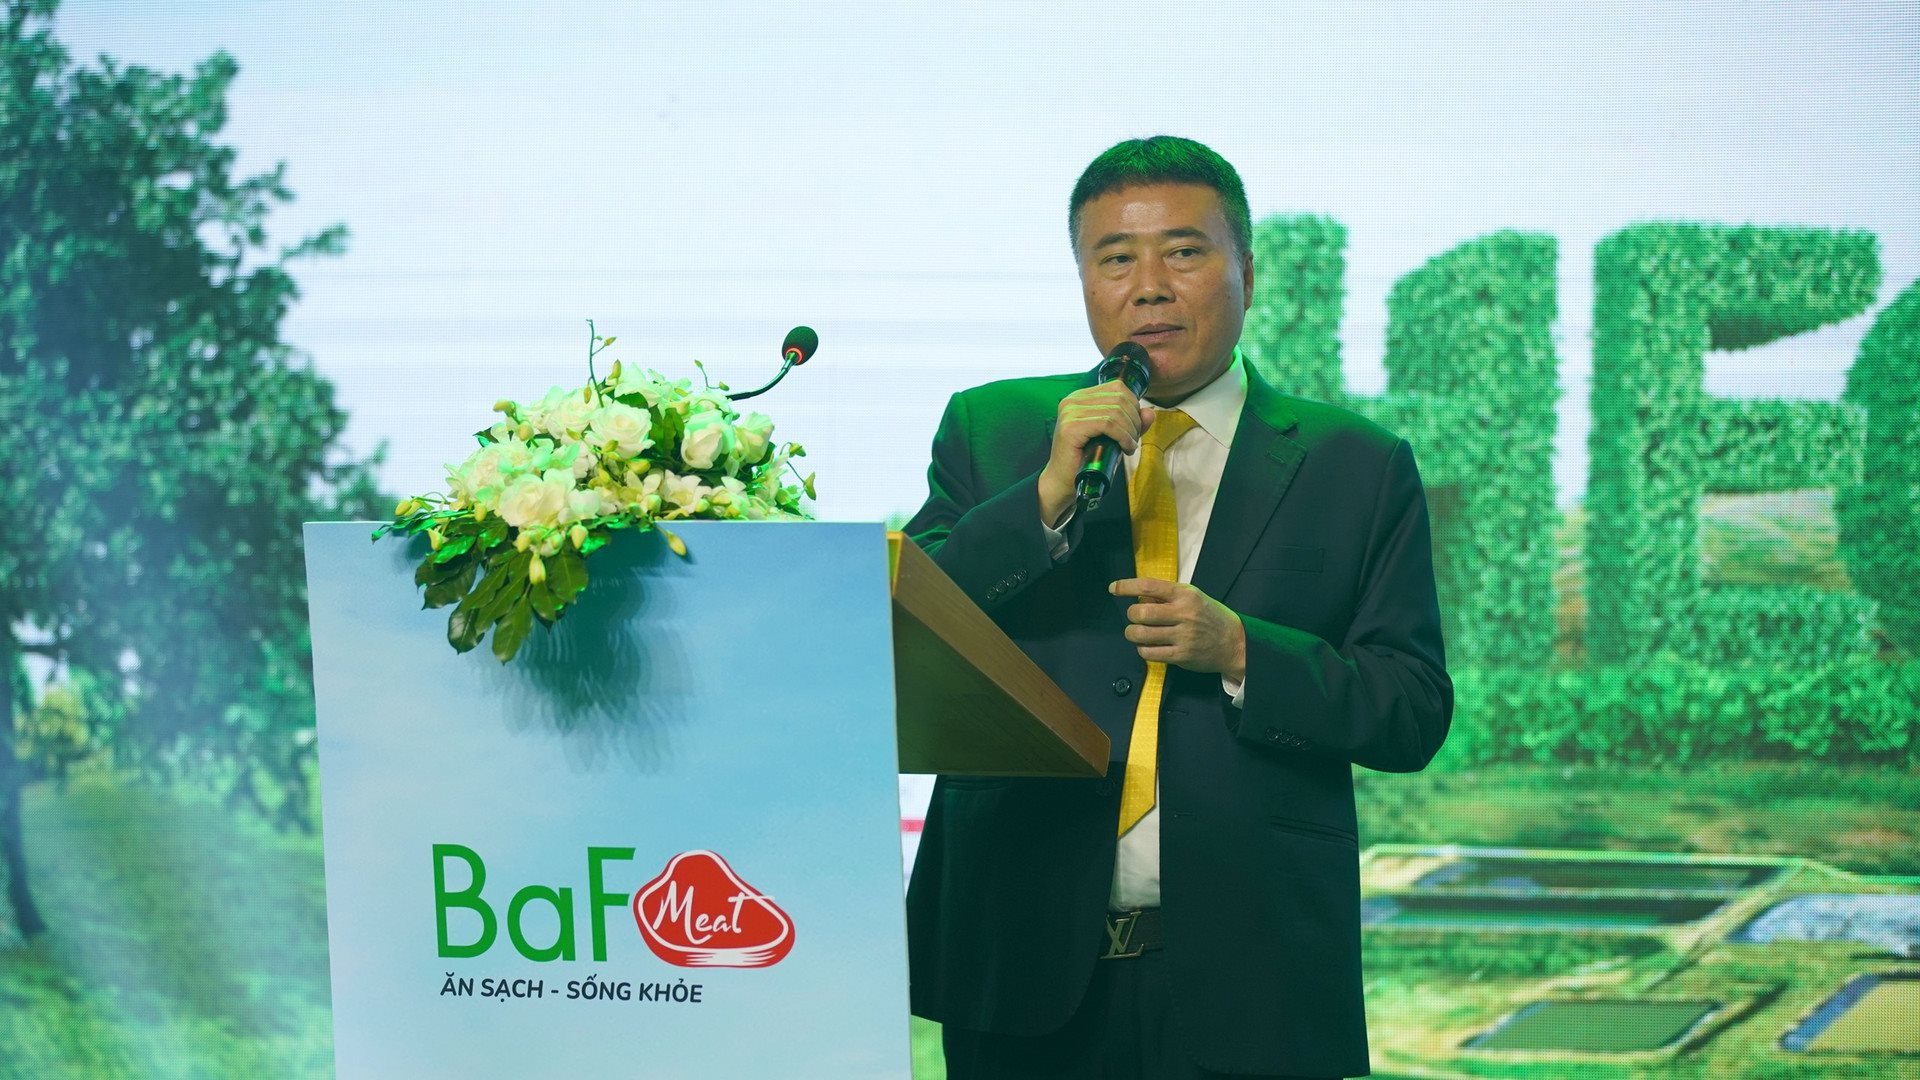 Ra mắt Heo ăn chay và tuyên bố “chơi lớn” với mảng heo, BaF của đại gia Trương Sỹ Bá “suýt” lỗ trong quý 4/2022 trước biến động thị trường - Ảnh 1.